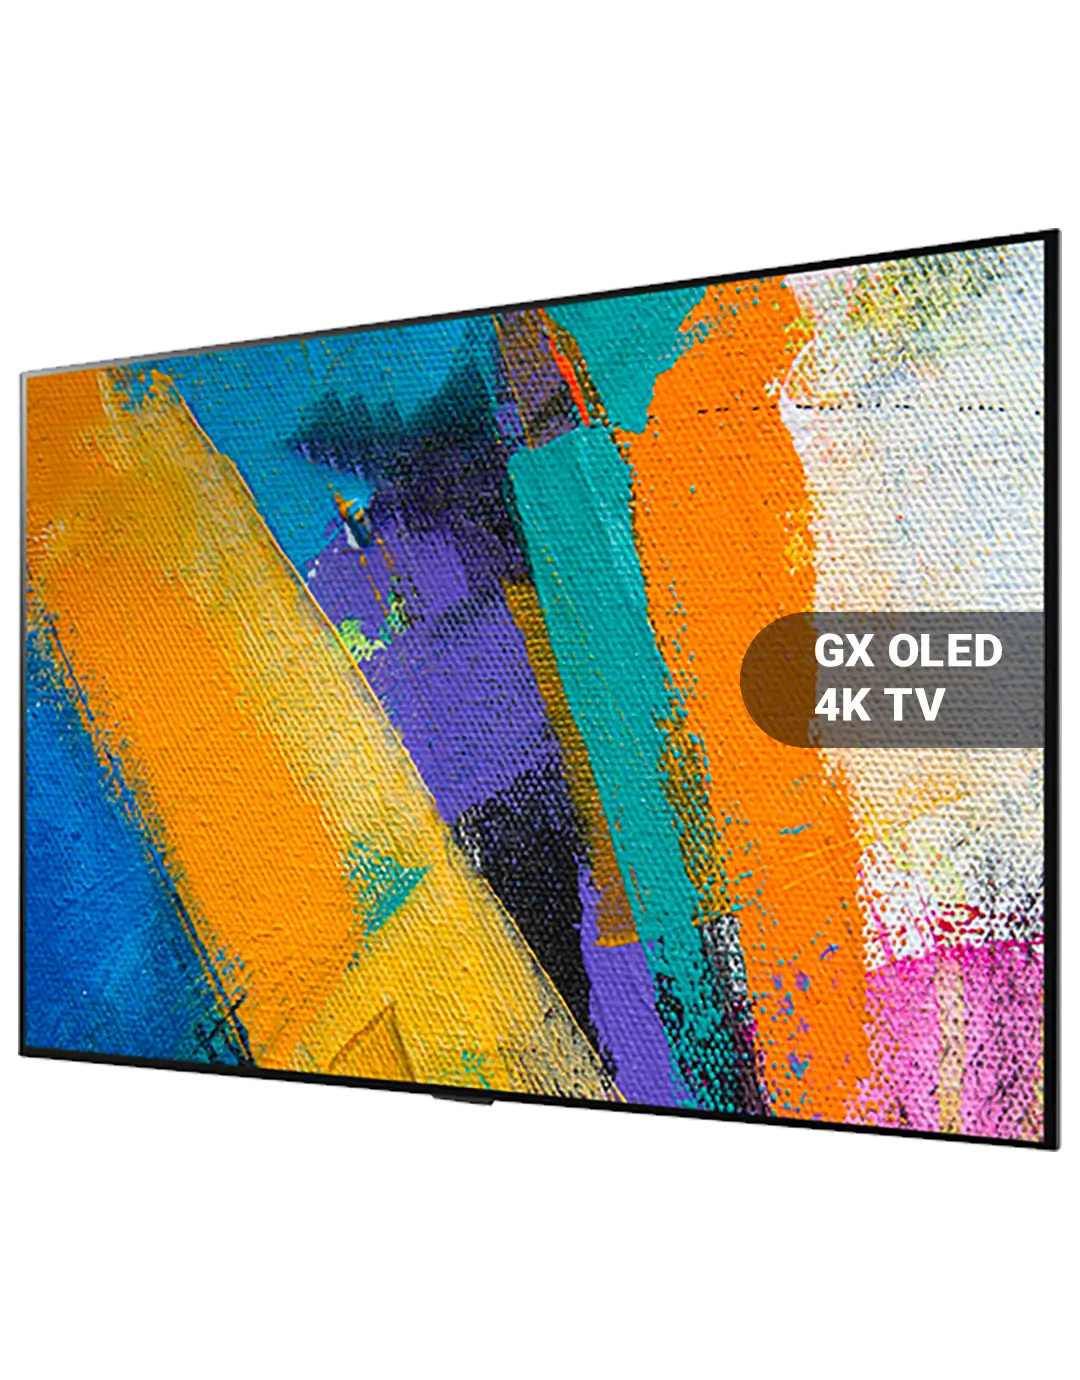 LG GX OLED 4K TV